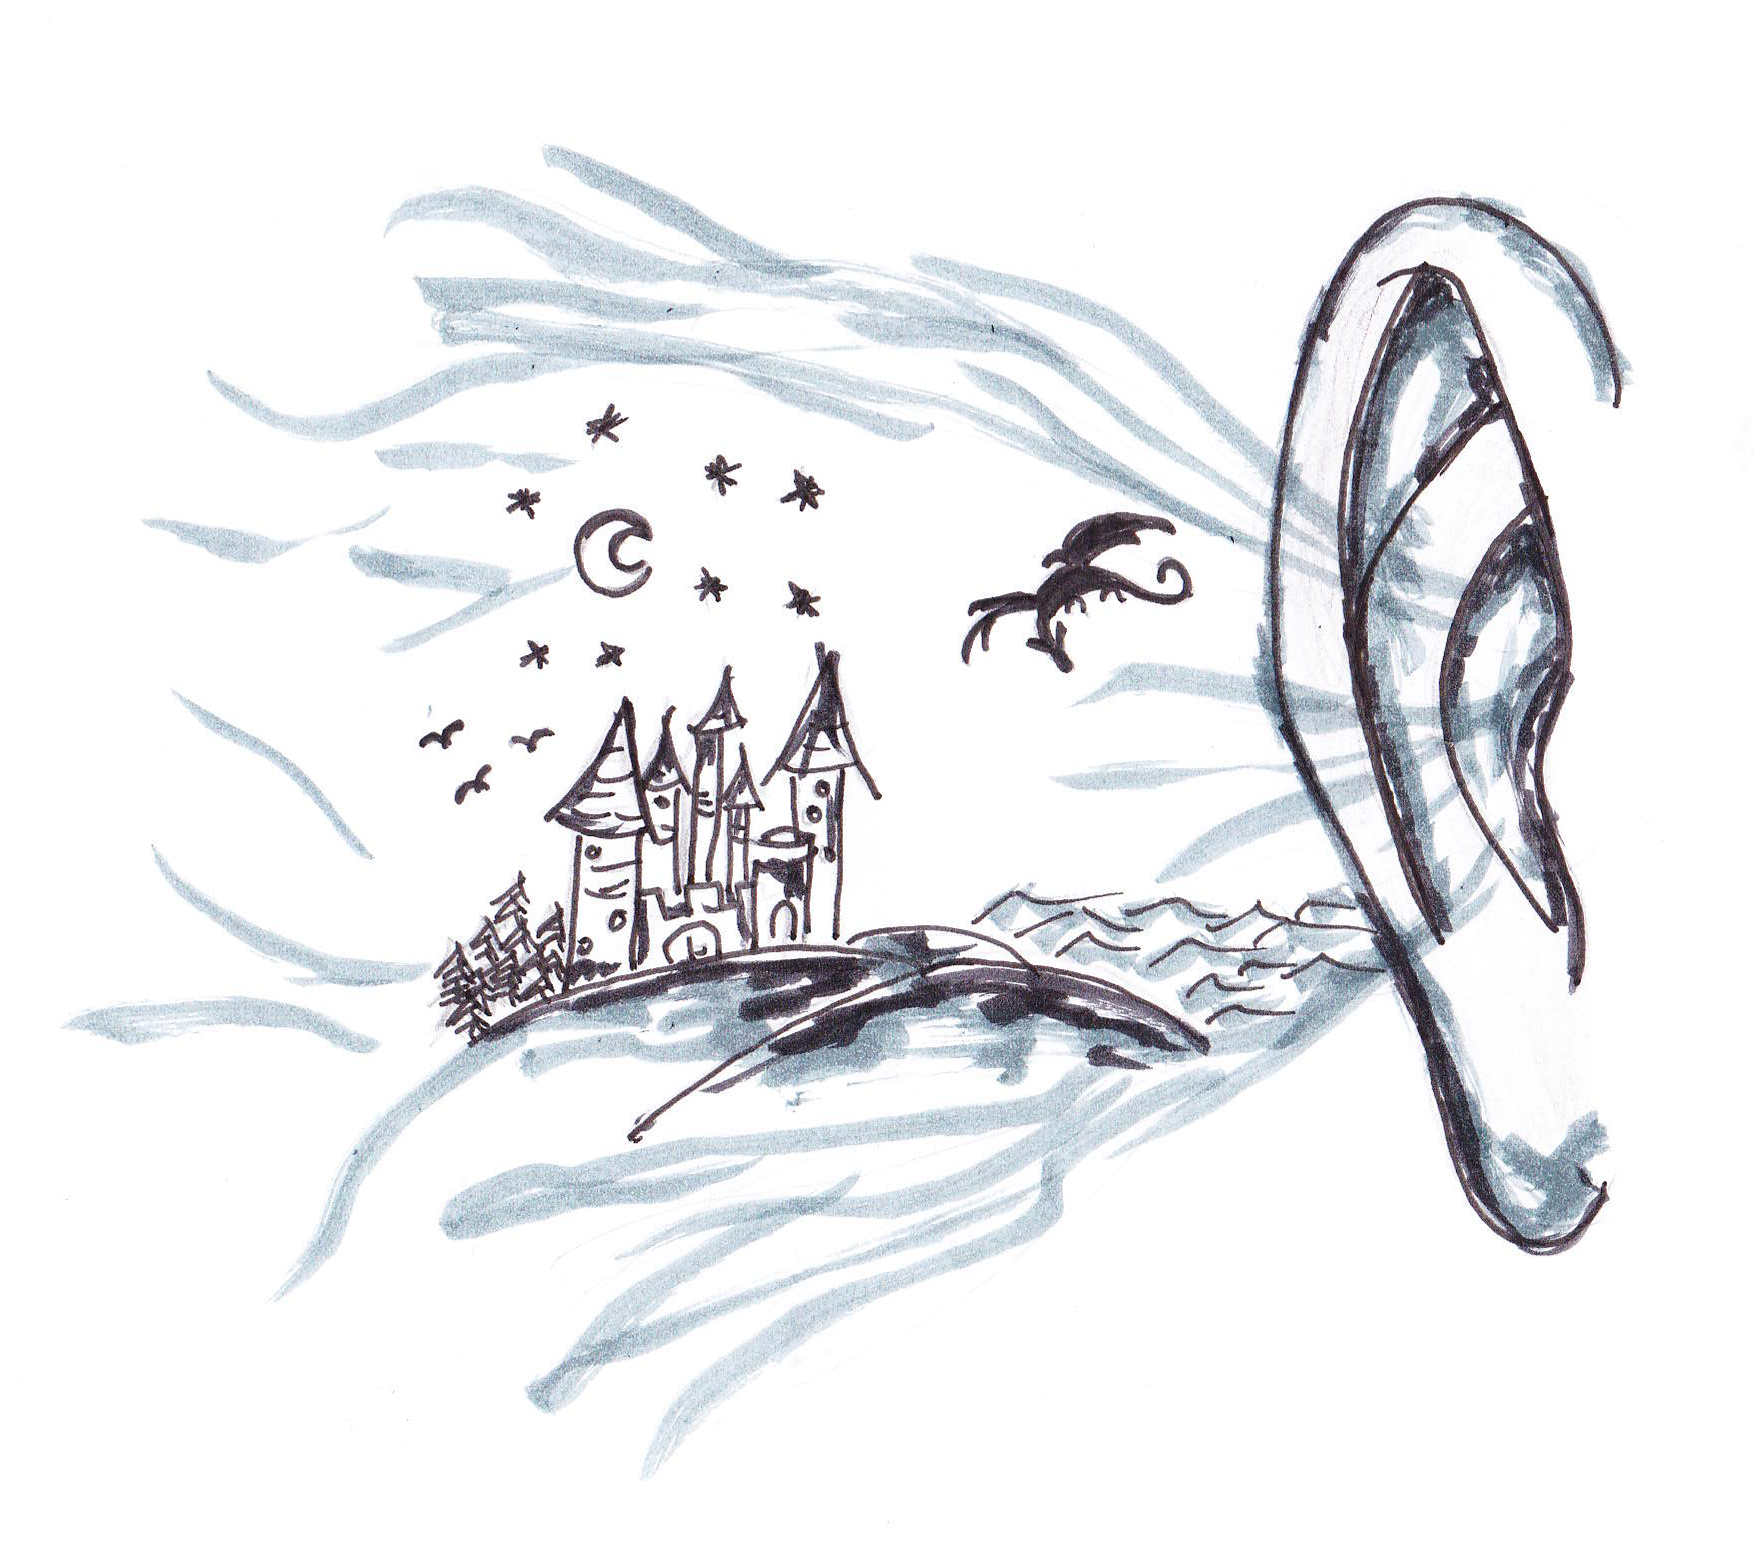 Die Graphik zeigt ein Ohr, das den Ausschnitt einer Fantasiewelt mit einem Schloss auf Hügeln, einem Sternenhimmel mit Halbmond und einem fliegenden Drachen wahrnimmt.